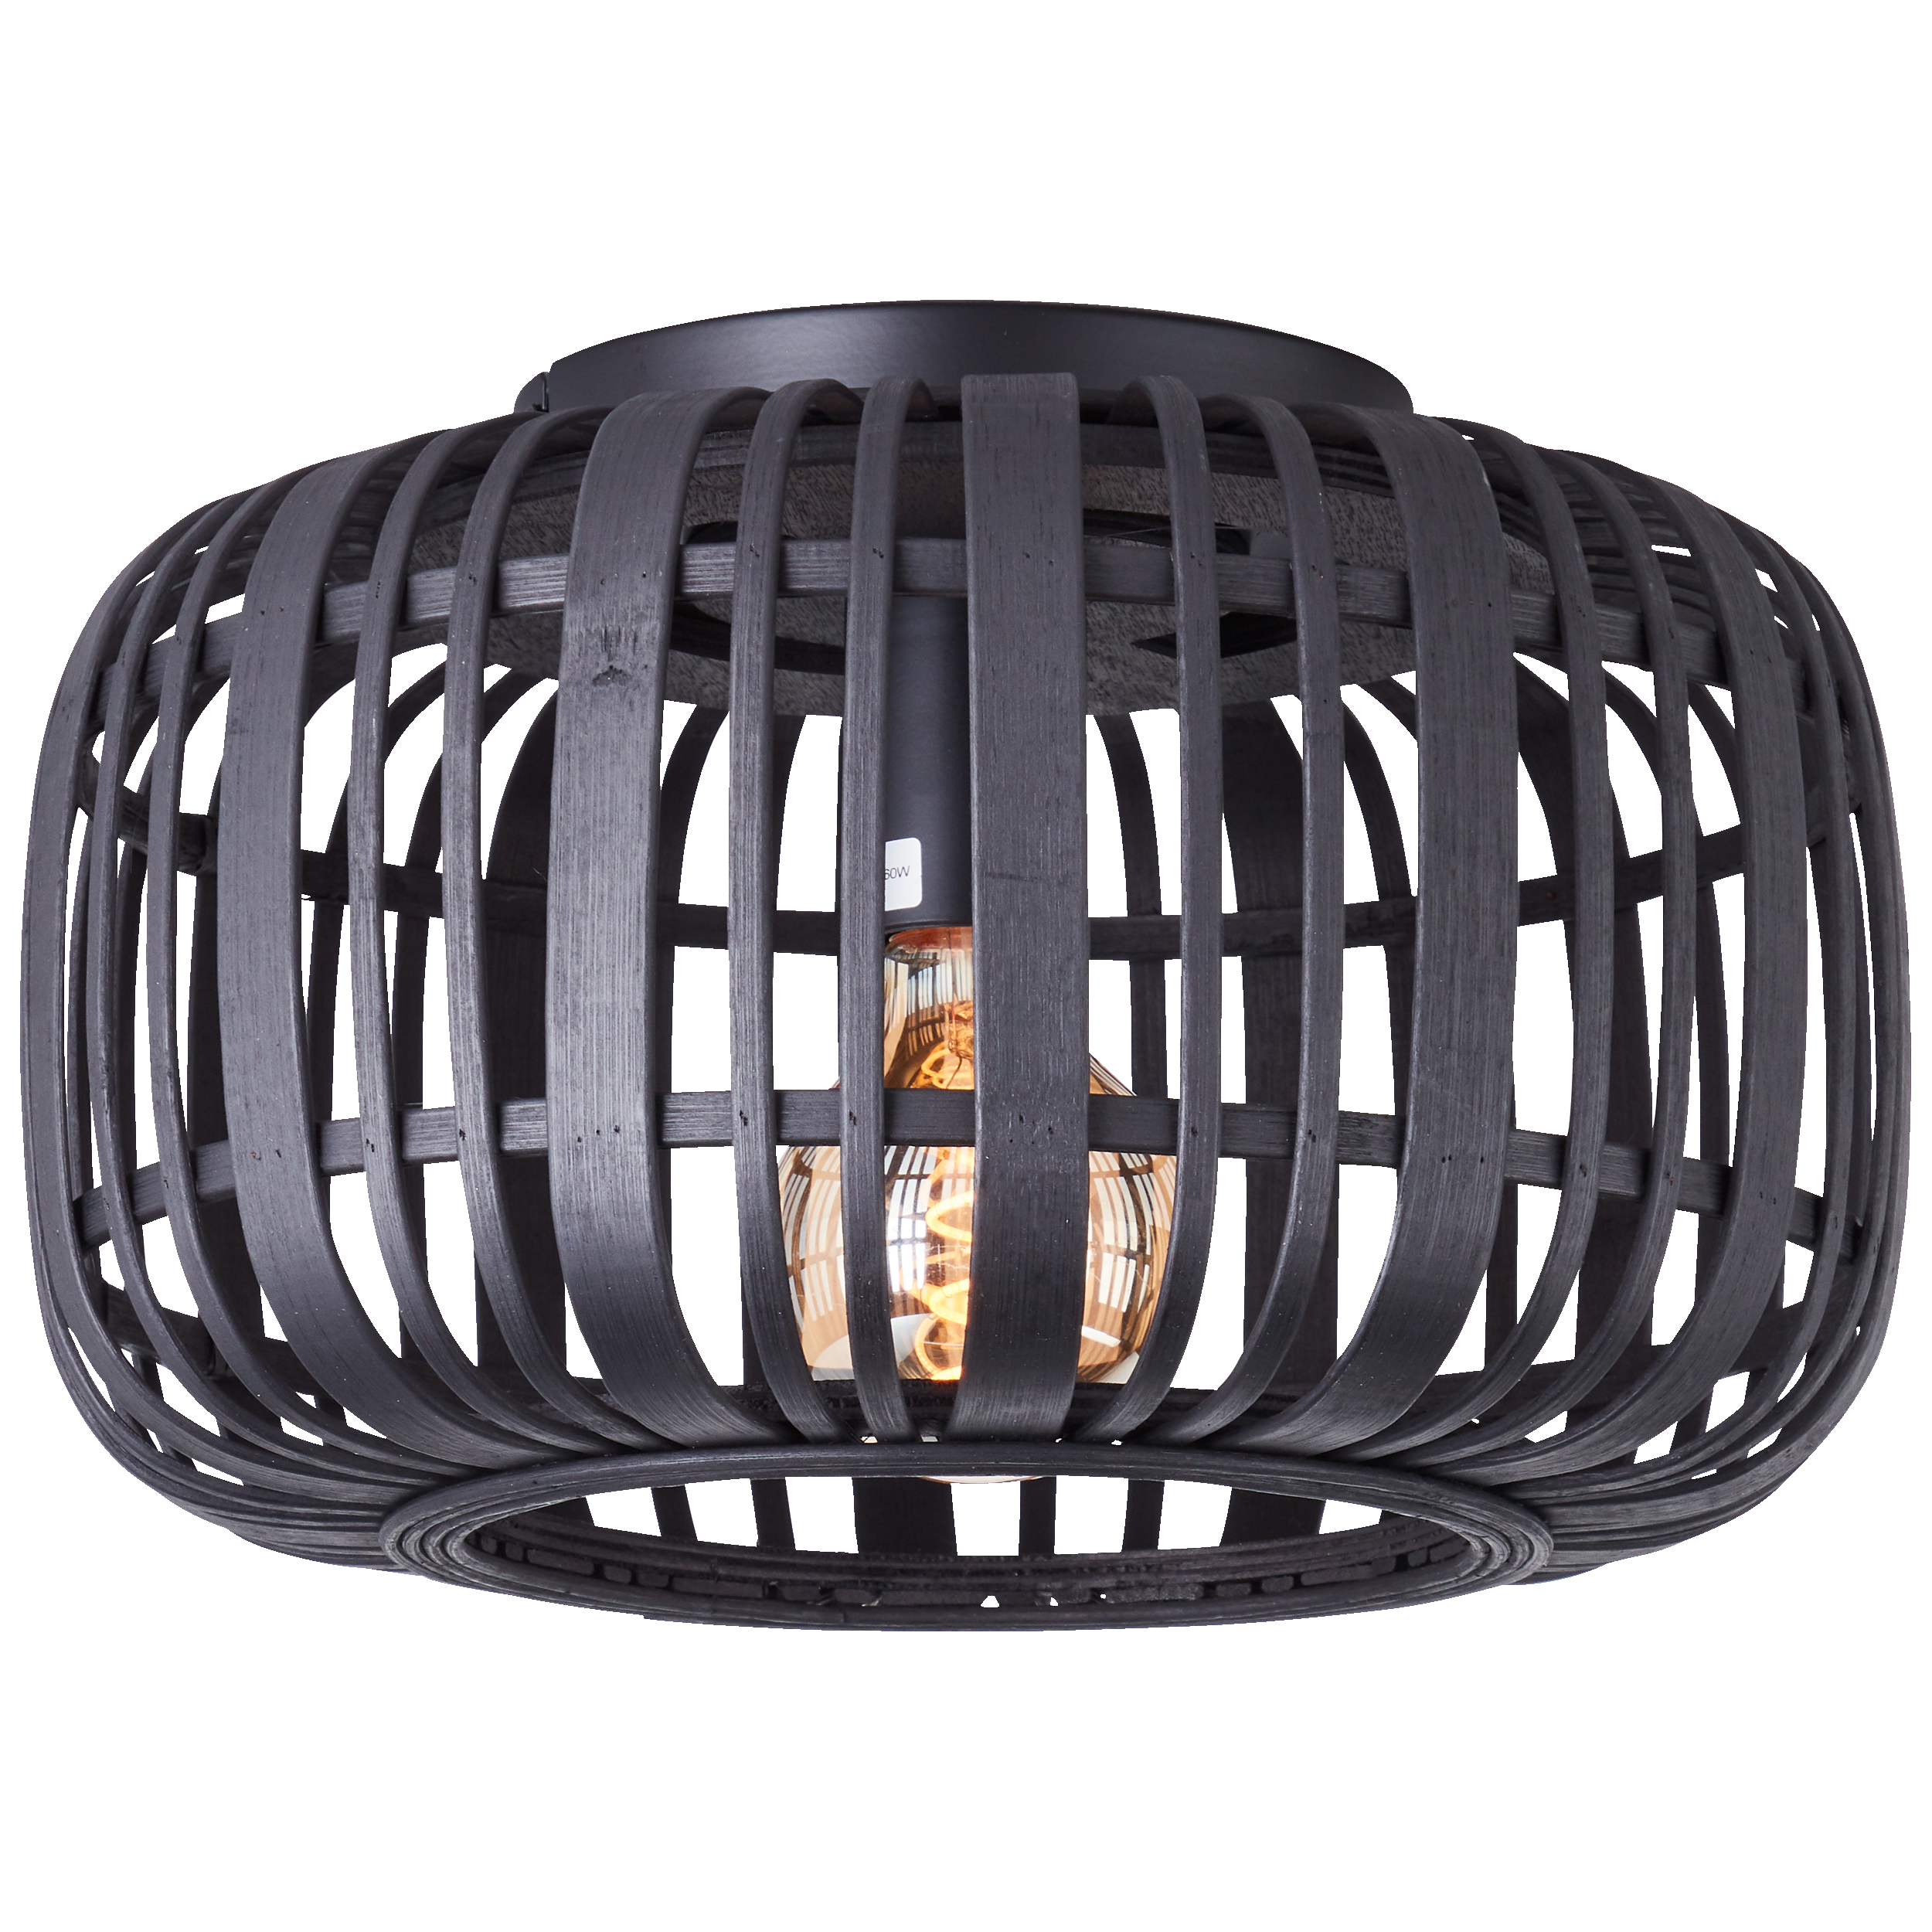 Stilvolle Bambus Deckenlampe · Lightbox Leuchten & Licht GmbH | Tischlampen